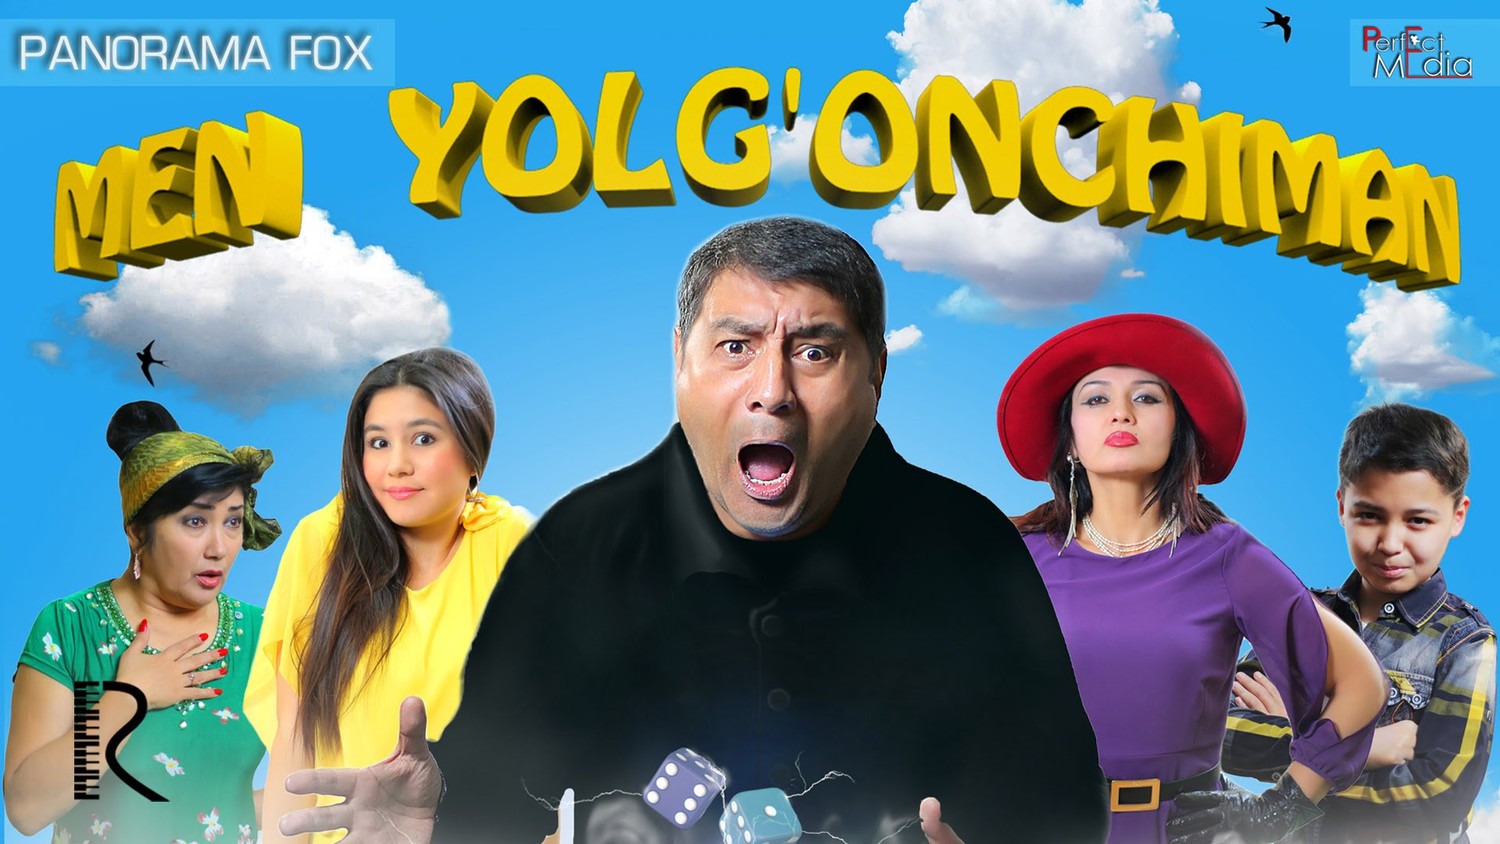 Yangi O'zbek Film 2016 Men yolg'onchiman PREMYERA смотреть онлайн